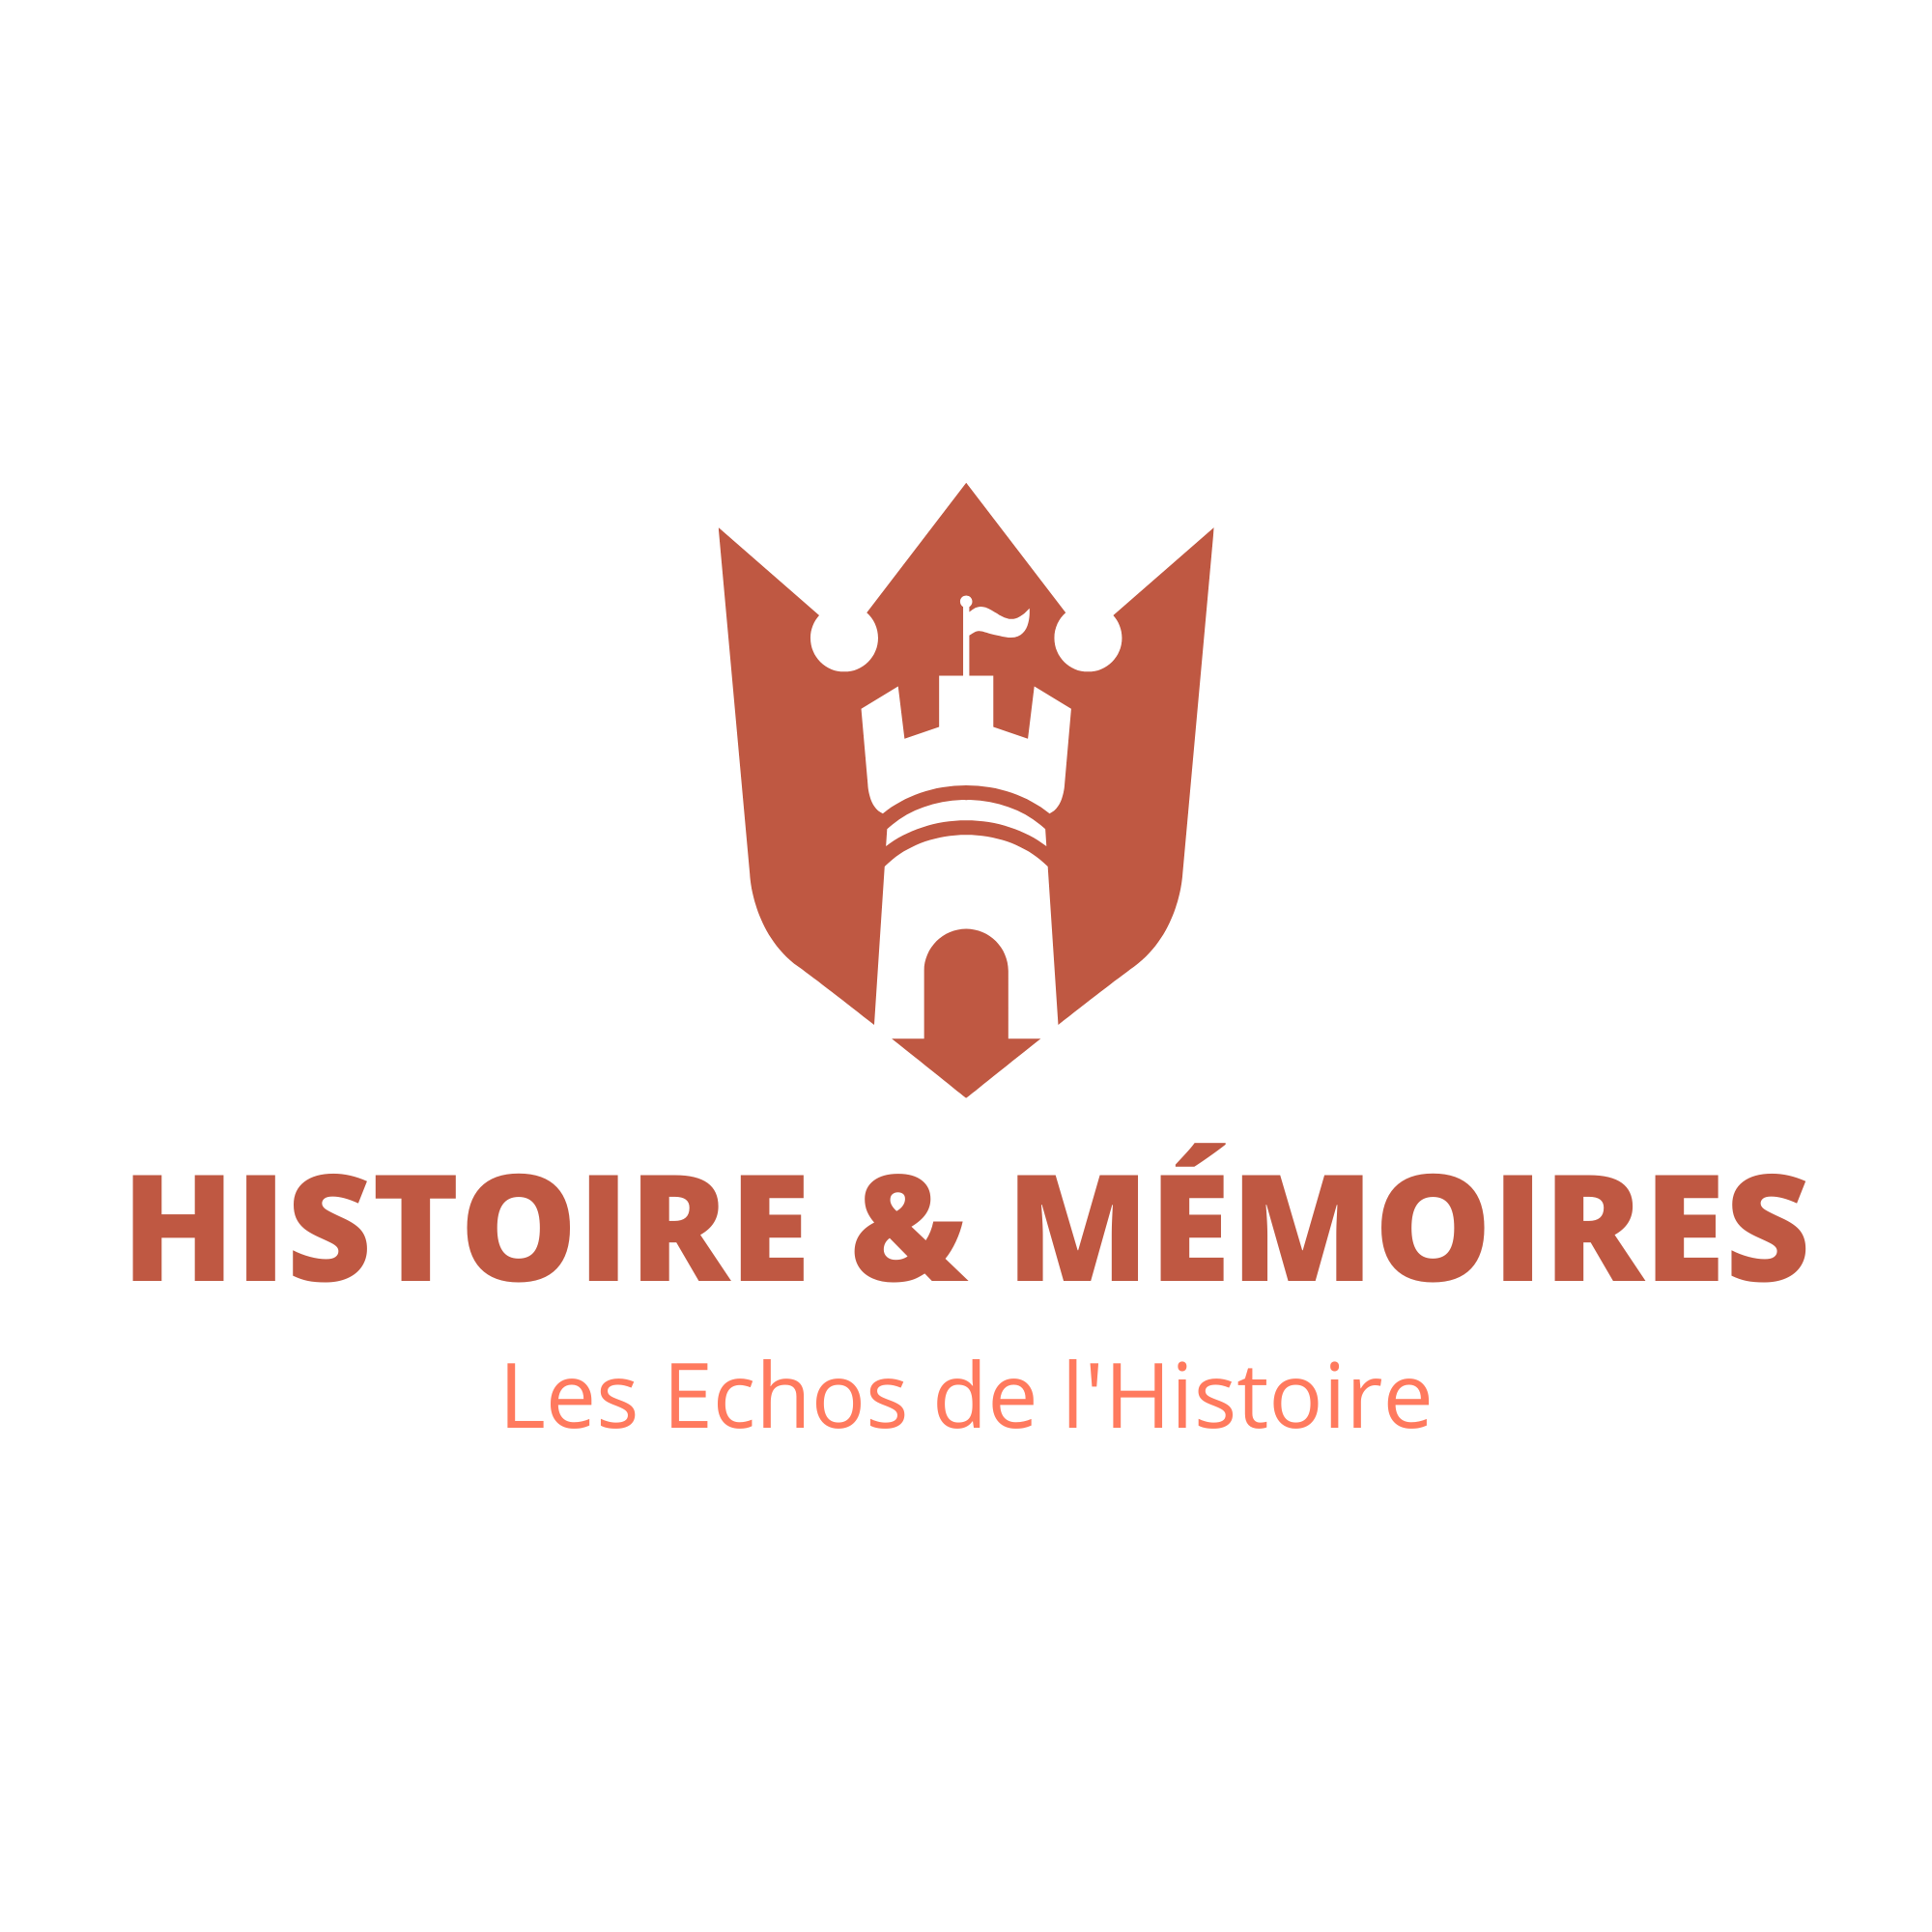 Histoire & Mémoires